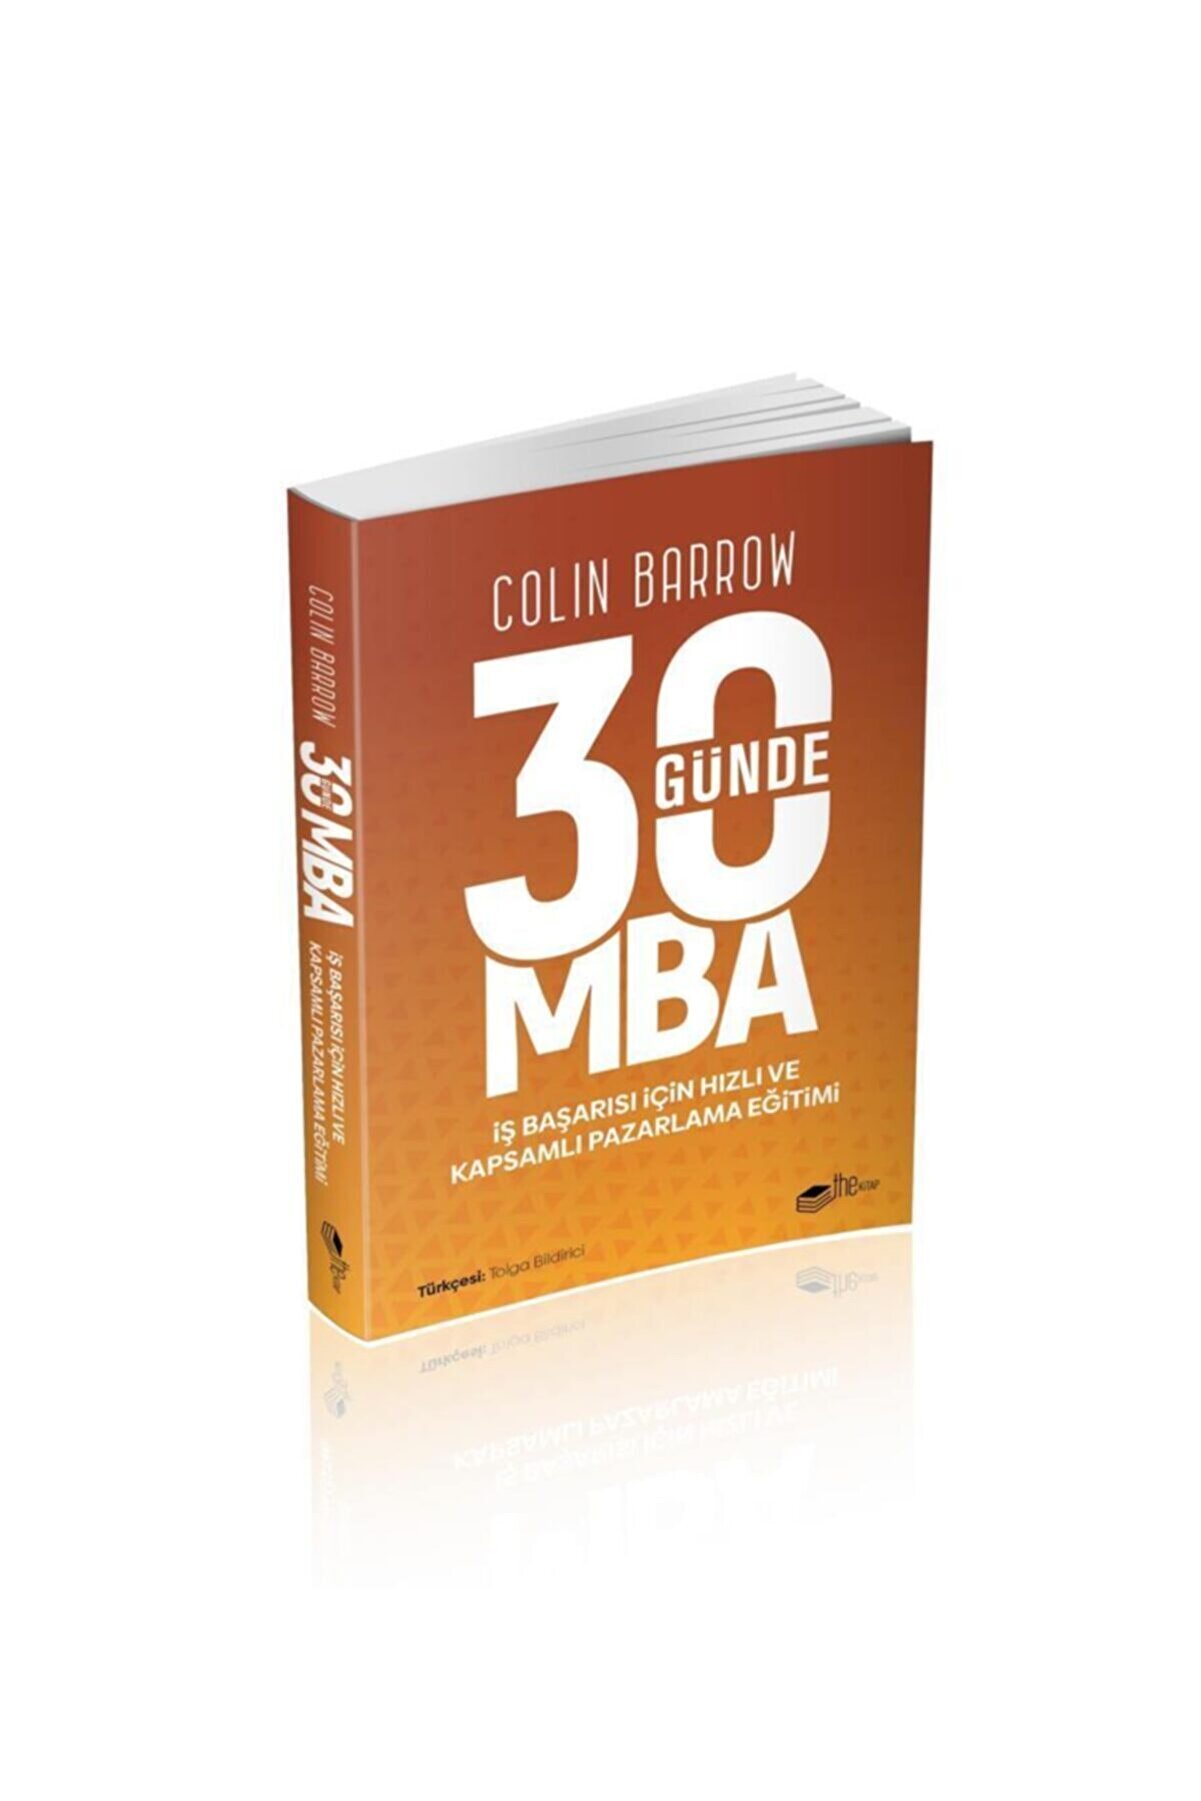 The Kitap 30 Günde Mba - - Colin Barrow Kitabı